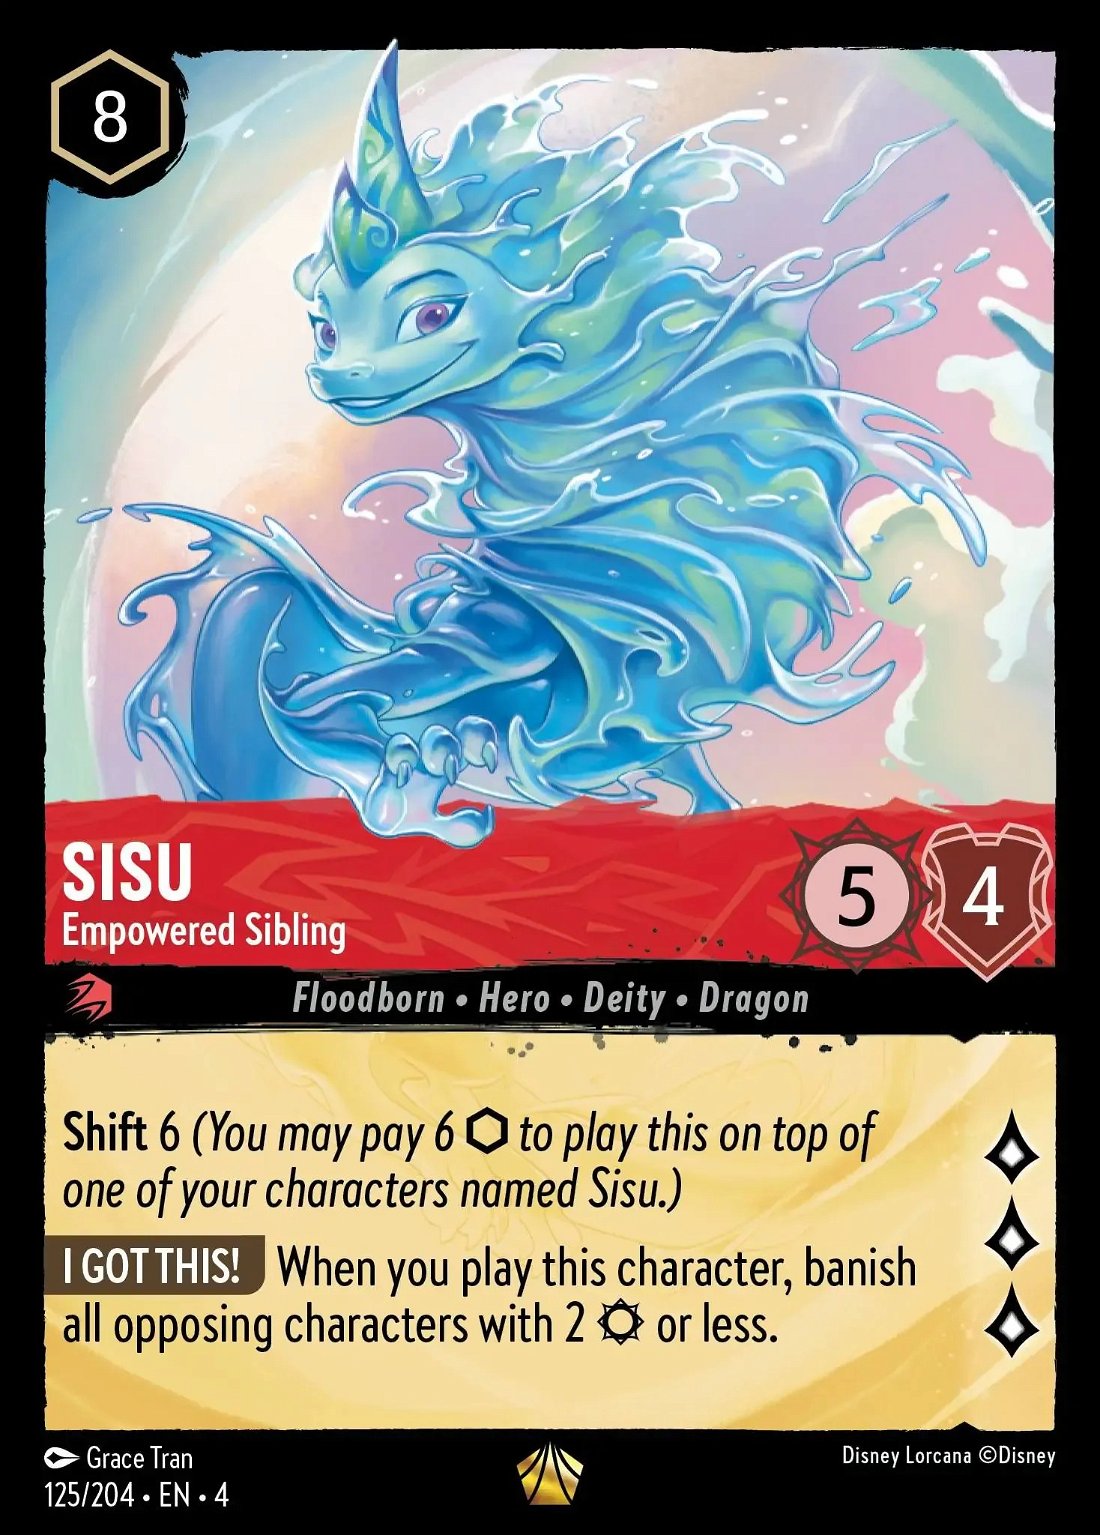 Sisu - Empowered Sibling Crop image Wallpaper